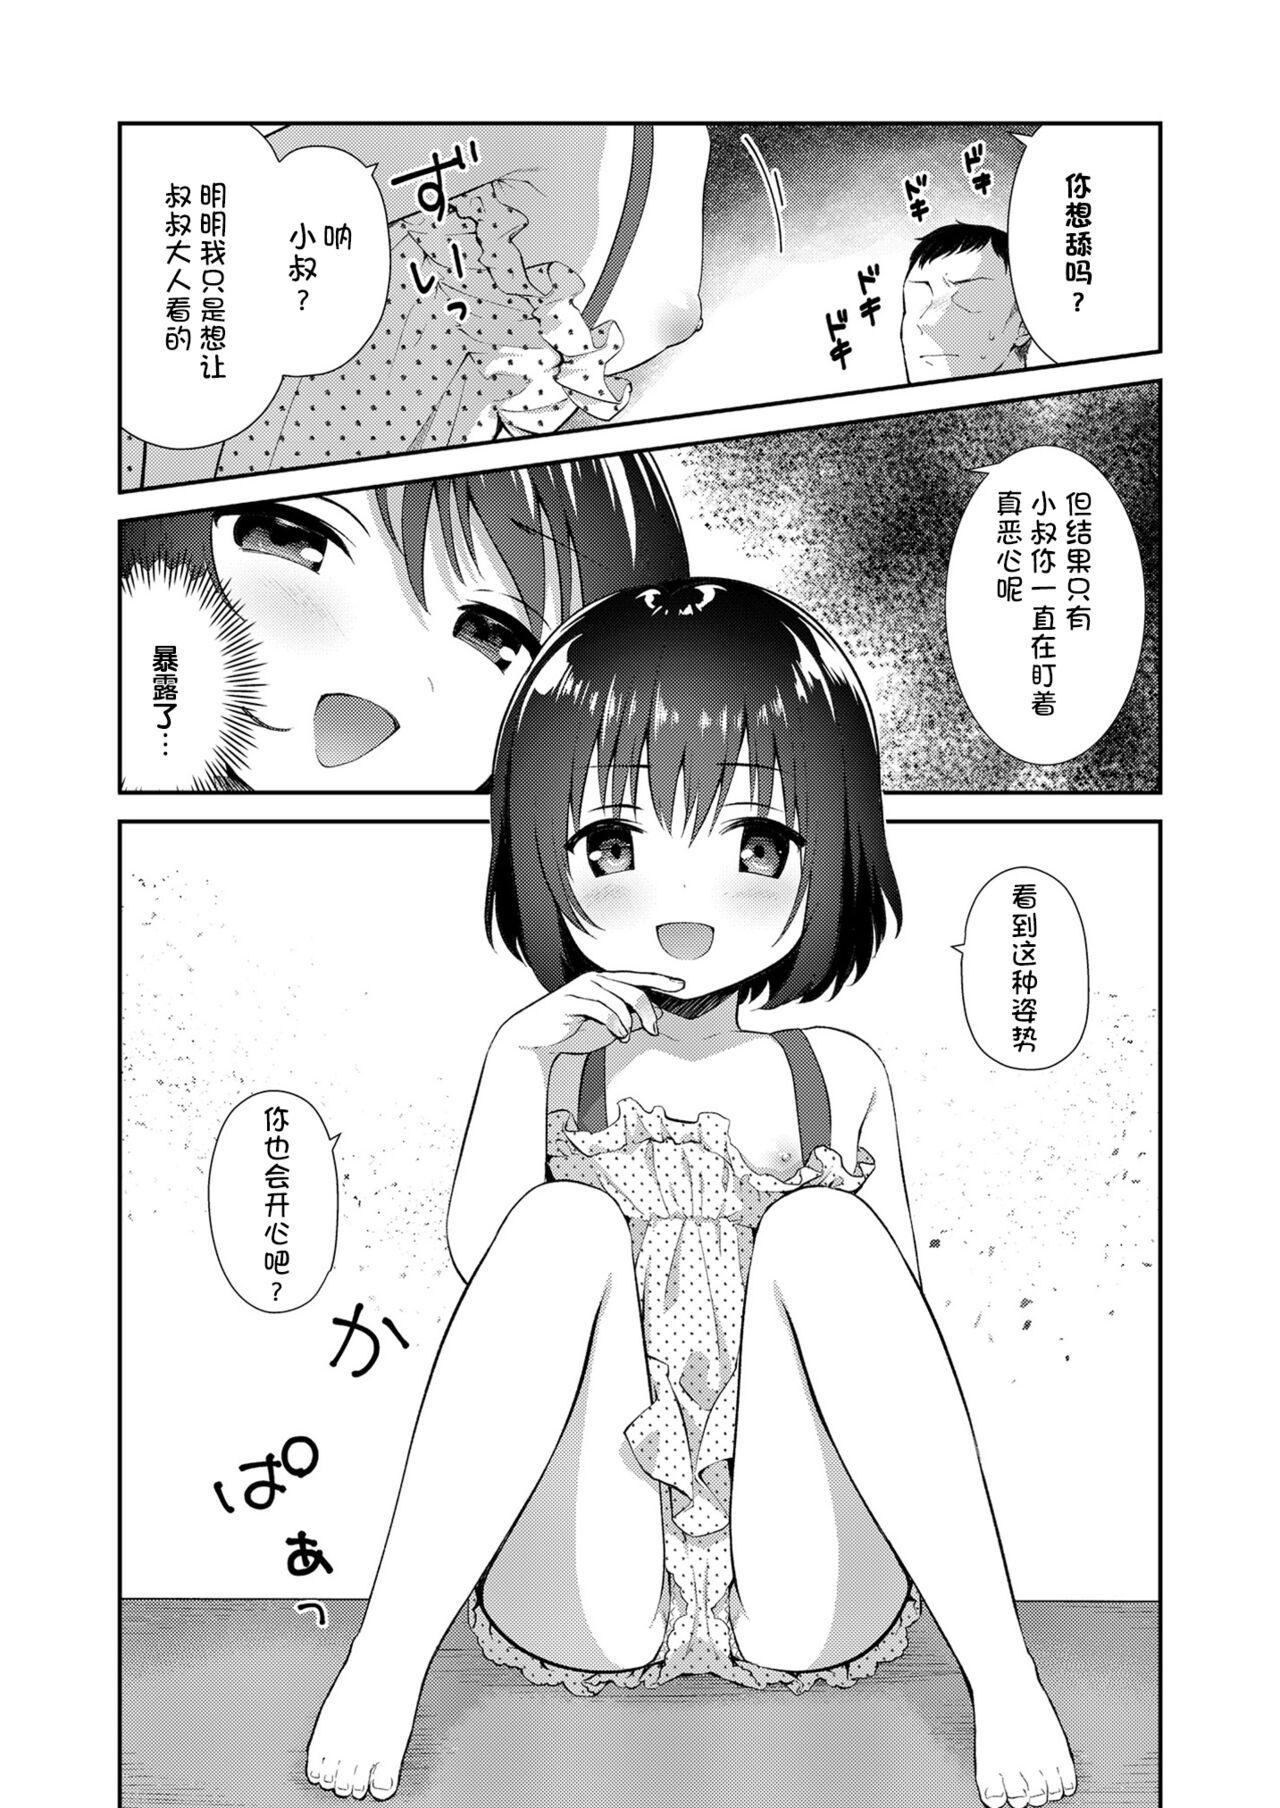 Transexual Mei ga Warui kara Shikatanai. - Original Butt - Page 4